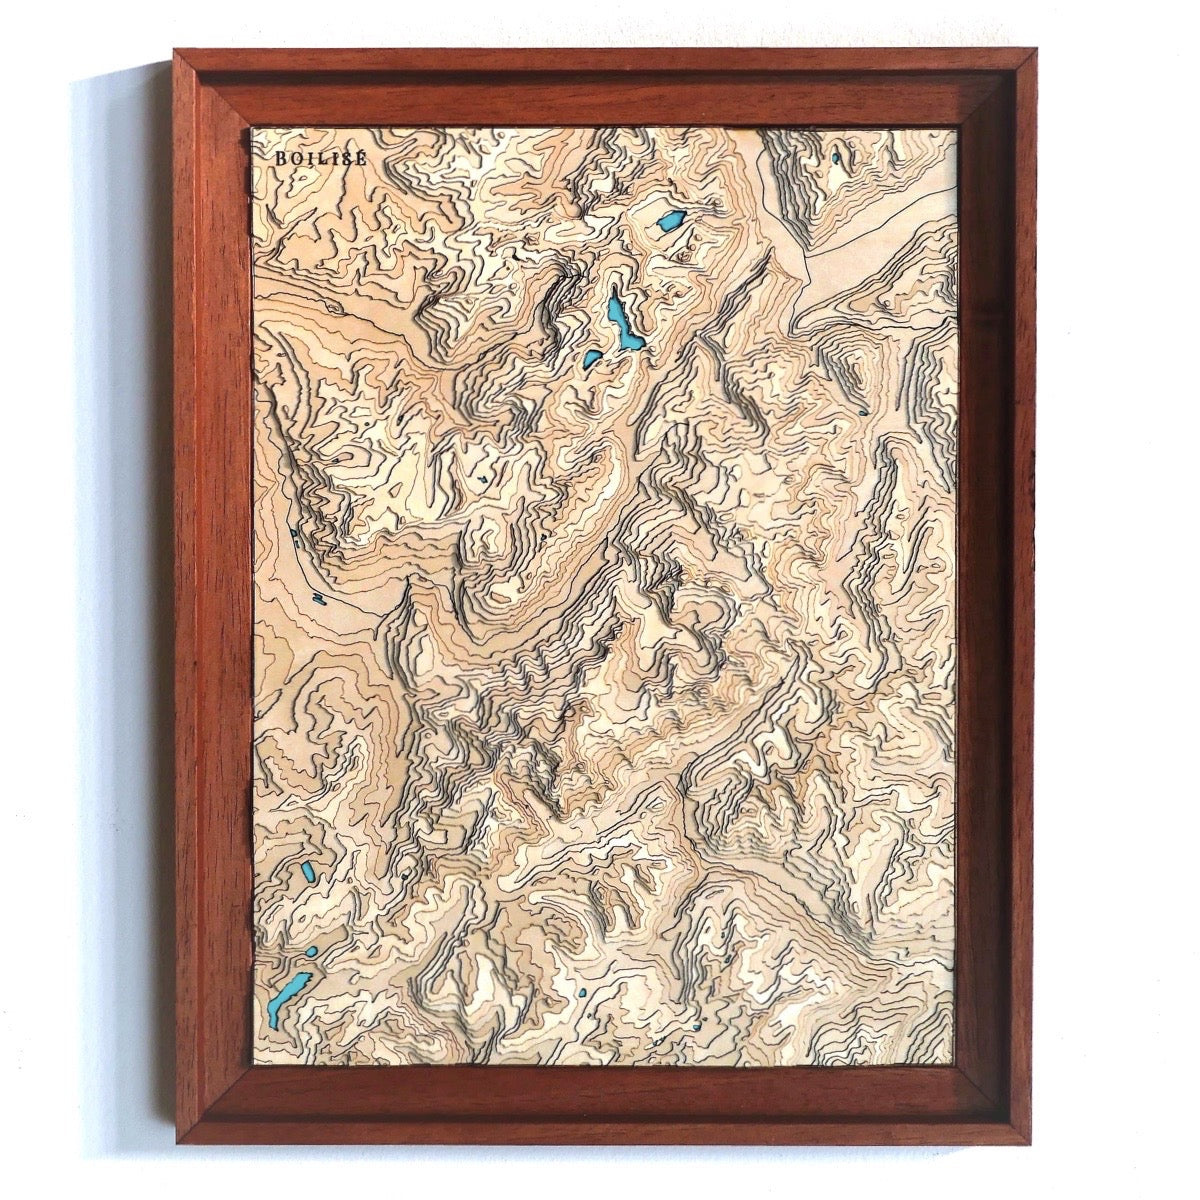 Carte topographique en relief du massif du mont blanc avec lacs turquoises dans une caisse américaine brune